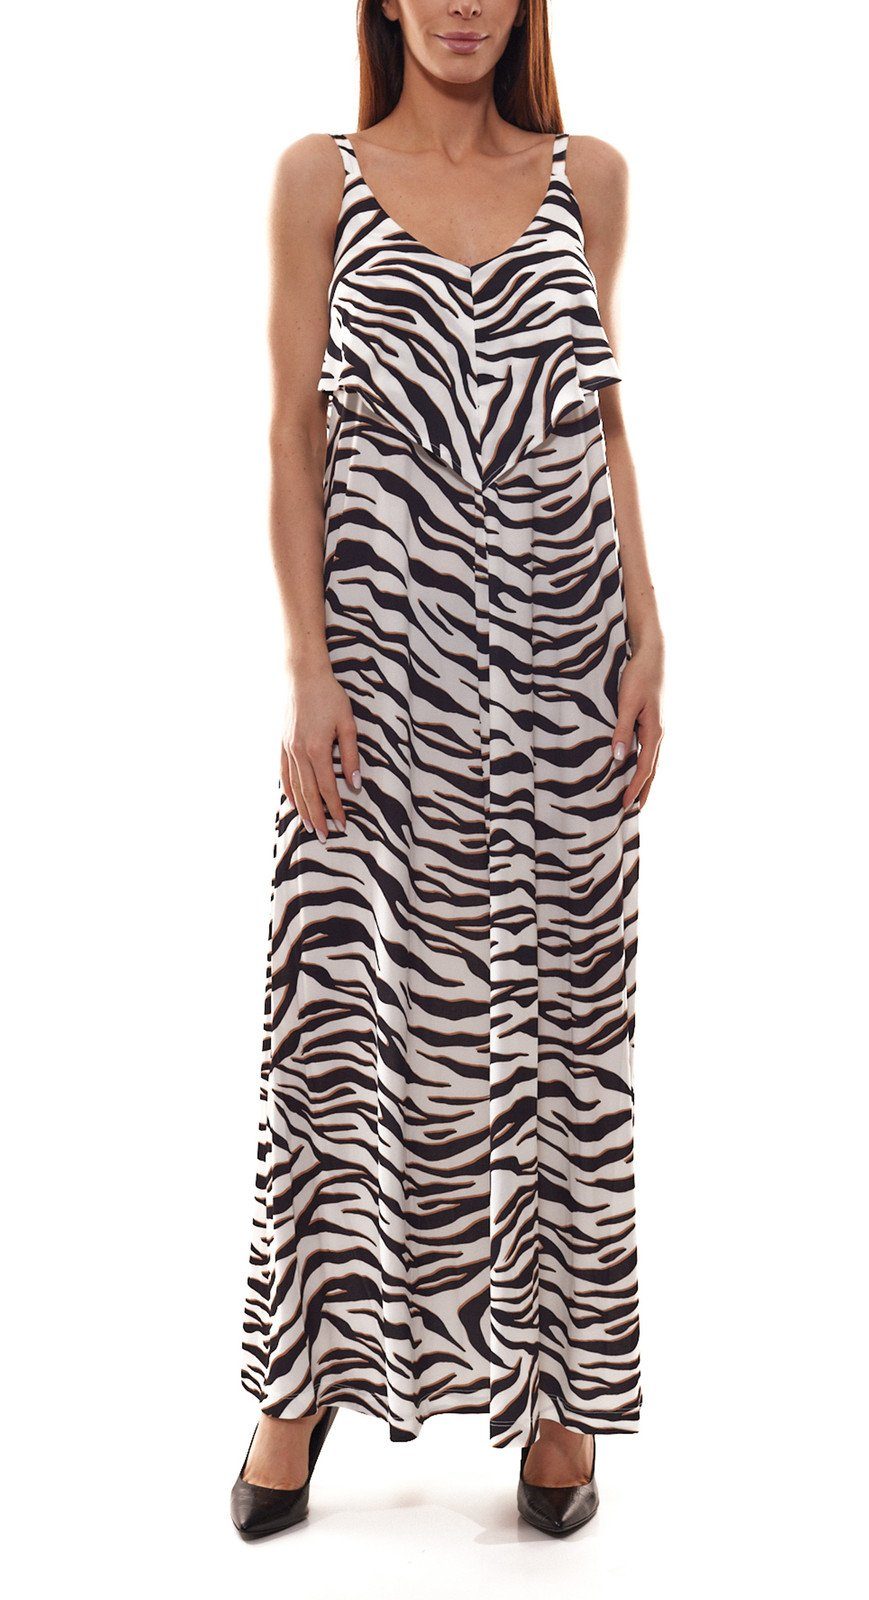 GUIDO MARIA KRETSCHMER Sommerkleid GUIDO MARIA KRETSCHMER Maxi-Kleid  animalisches Damen Ausgeh-Kleid im Zebra Look Sommer-Kleid Weiß